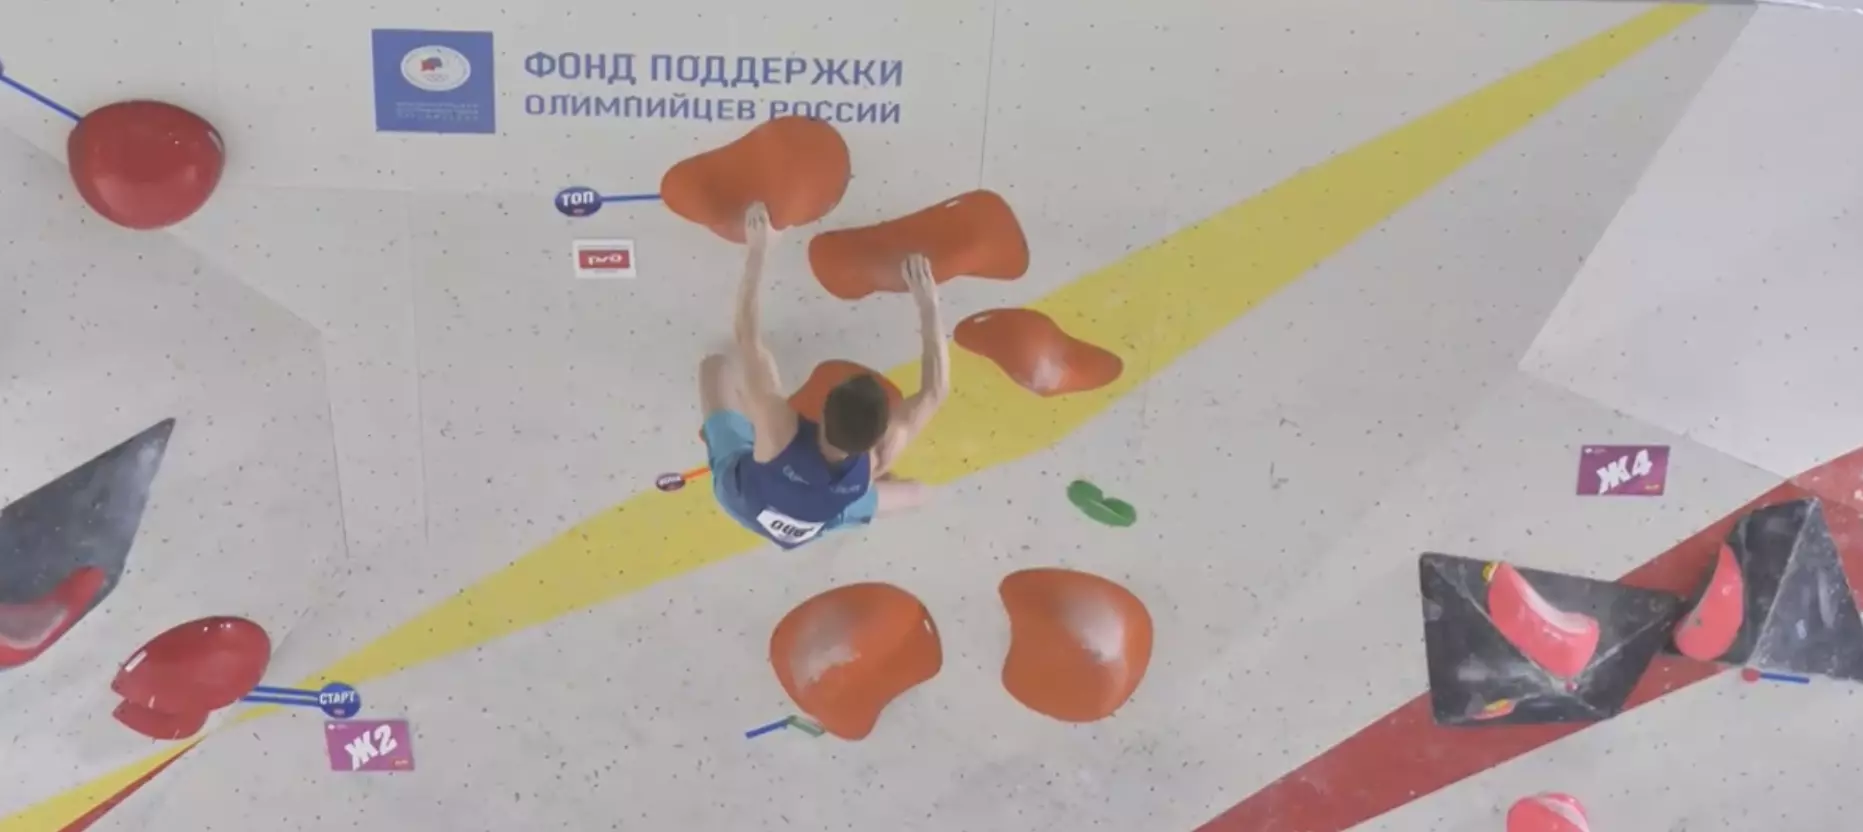 Победителем Кубка России по скалолазанию стал Вадим Тимонов из Санкт-Петербурга